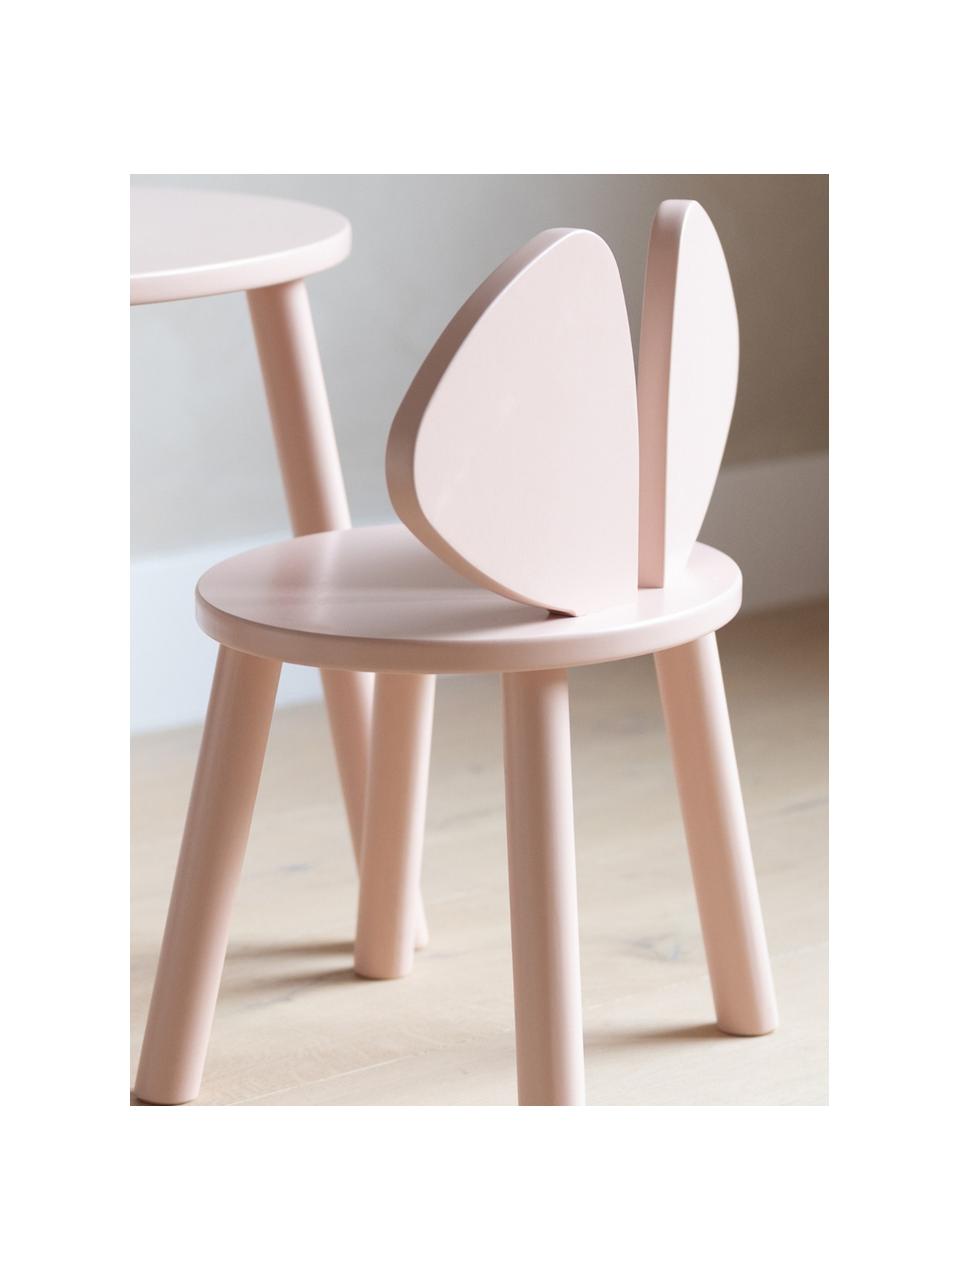 Chaise en bois pour enfant Mouse, Bois de bouleau, laqué

Ce produit est fabriqué à partir de bois certifié FSC® et issu d'une exploitation durable, Rose pâle, larg. 43 x prof. 28 cm